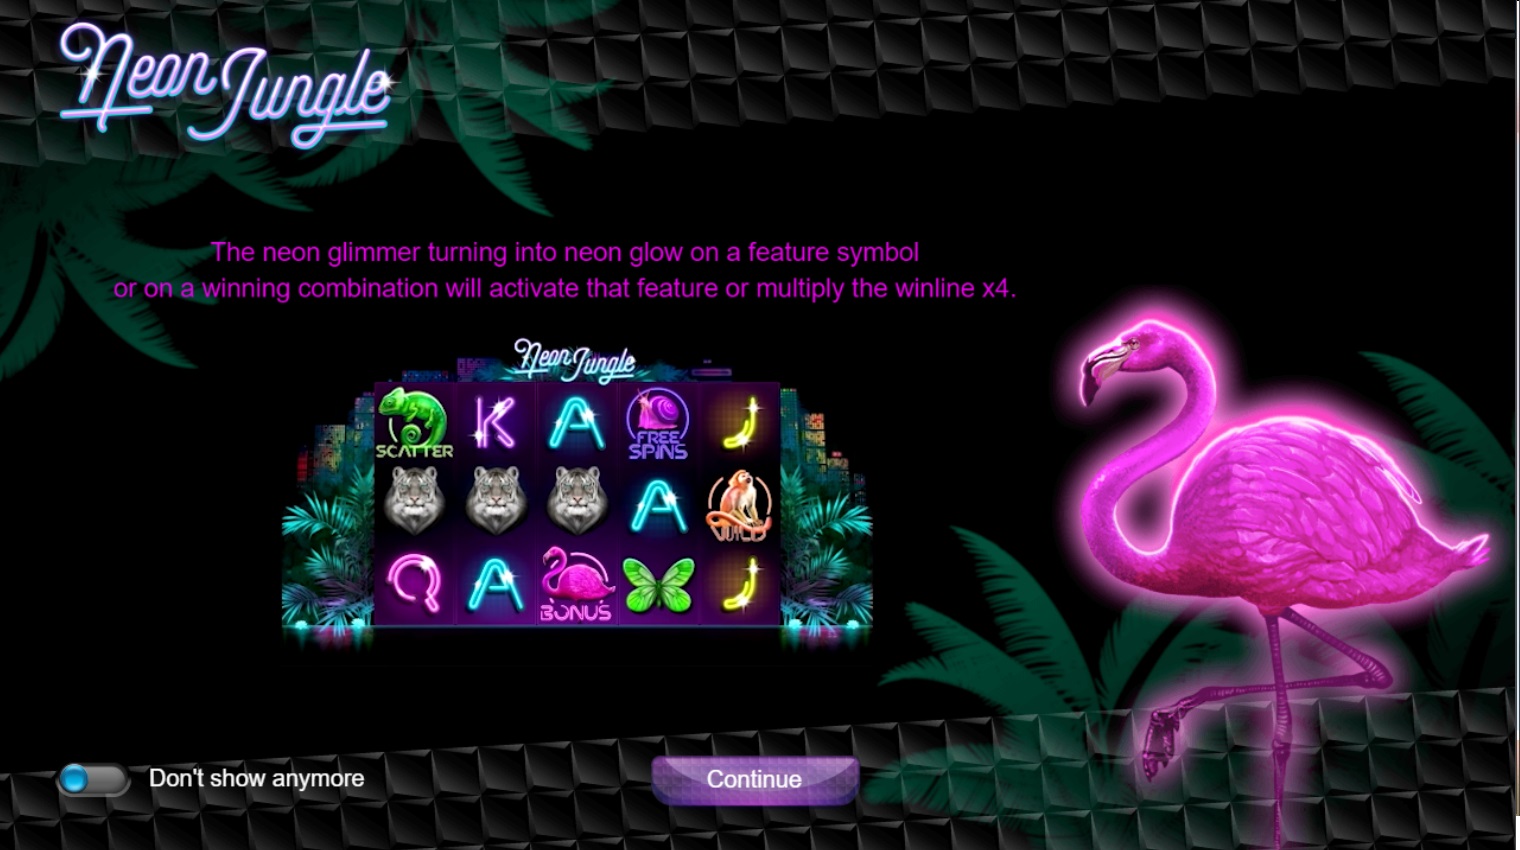 Игровой автомат Neon Jungle